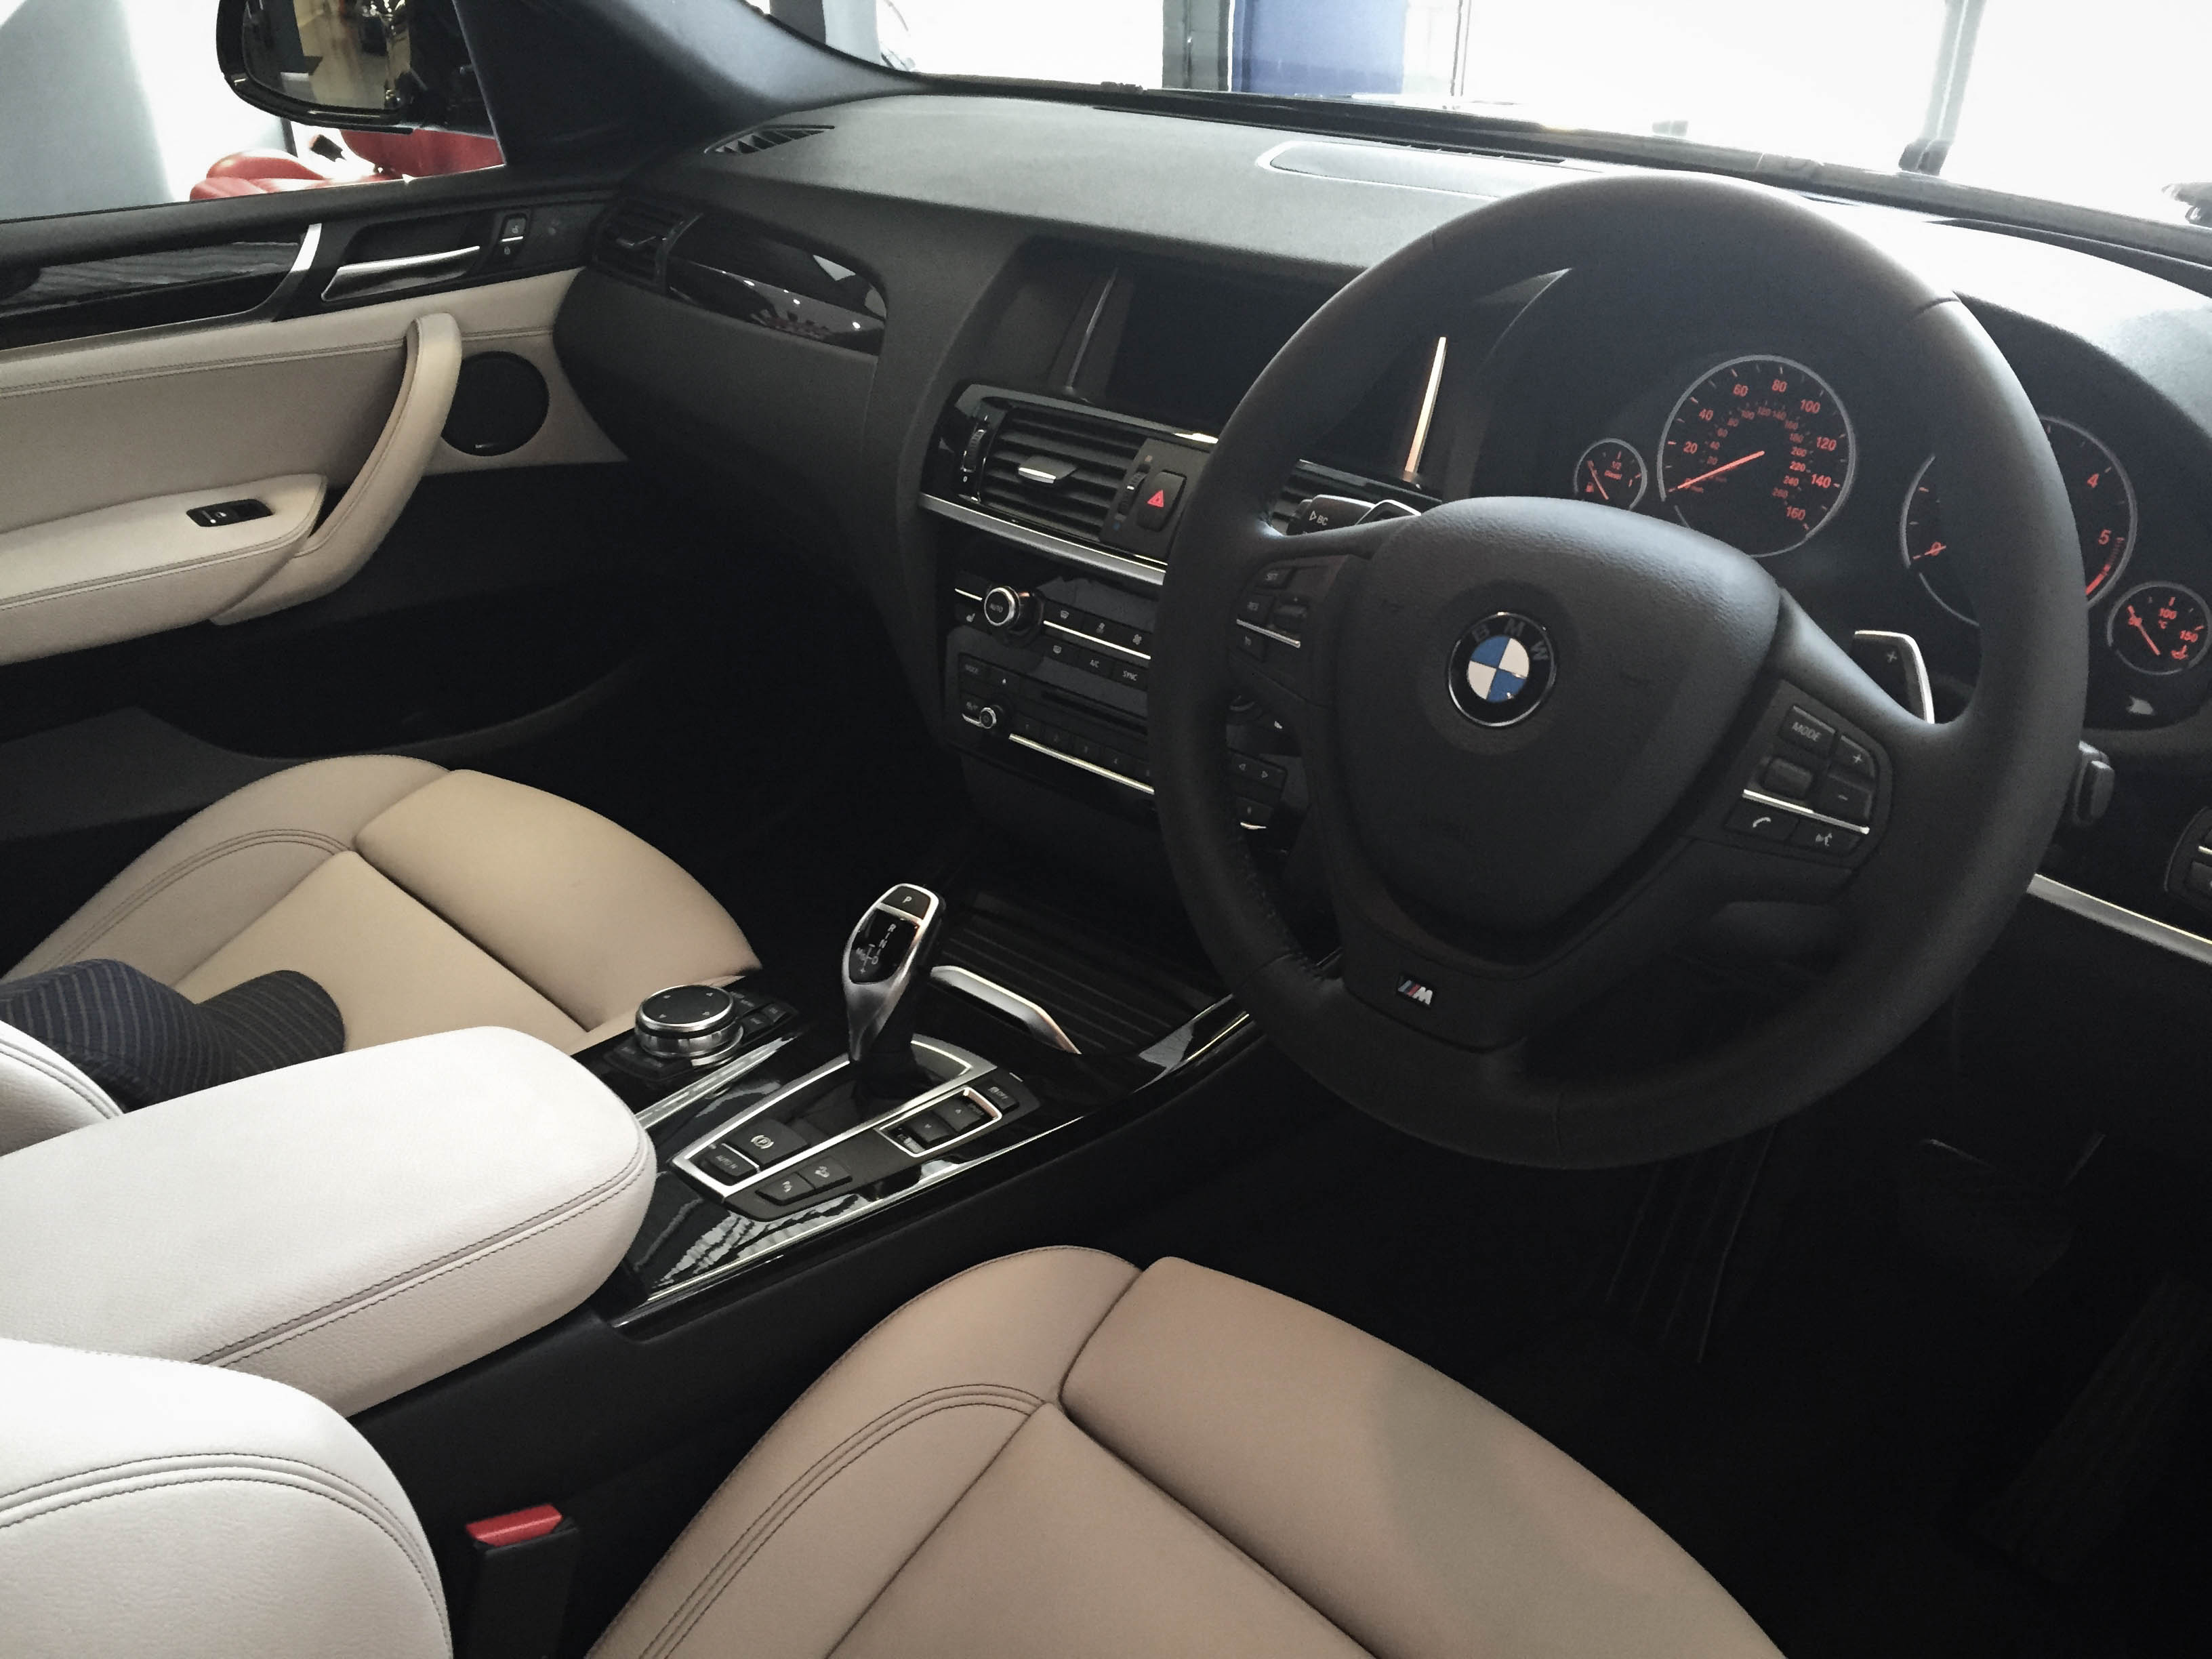 BMW X4 – Detailed Interior